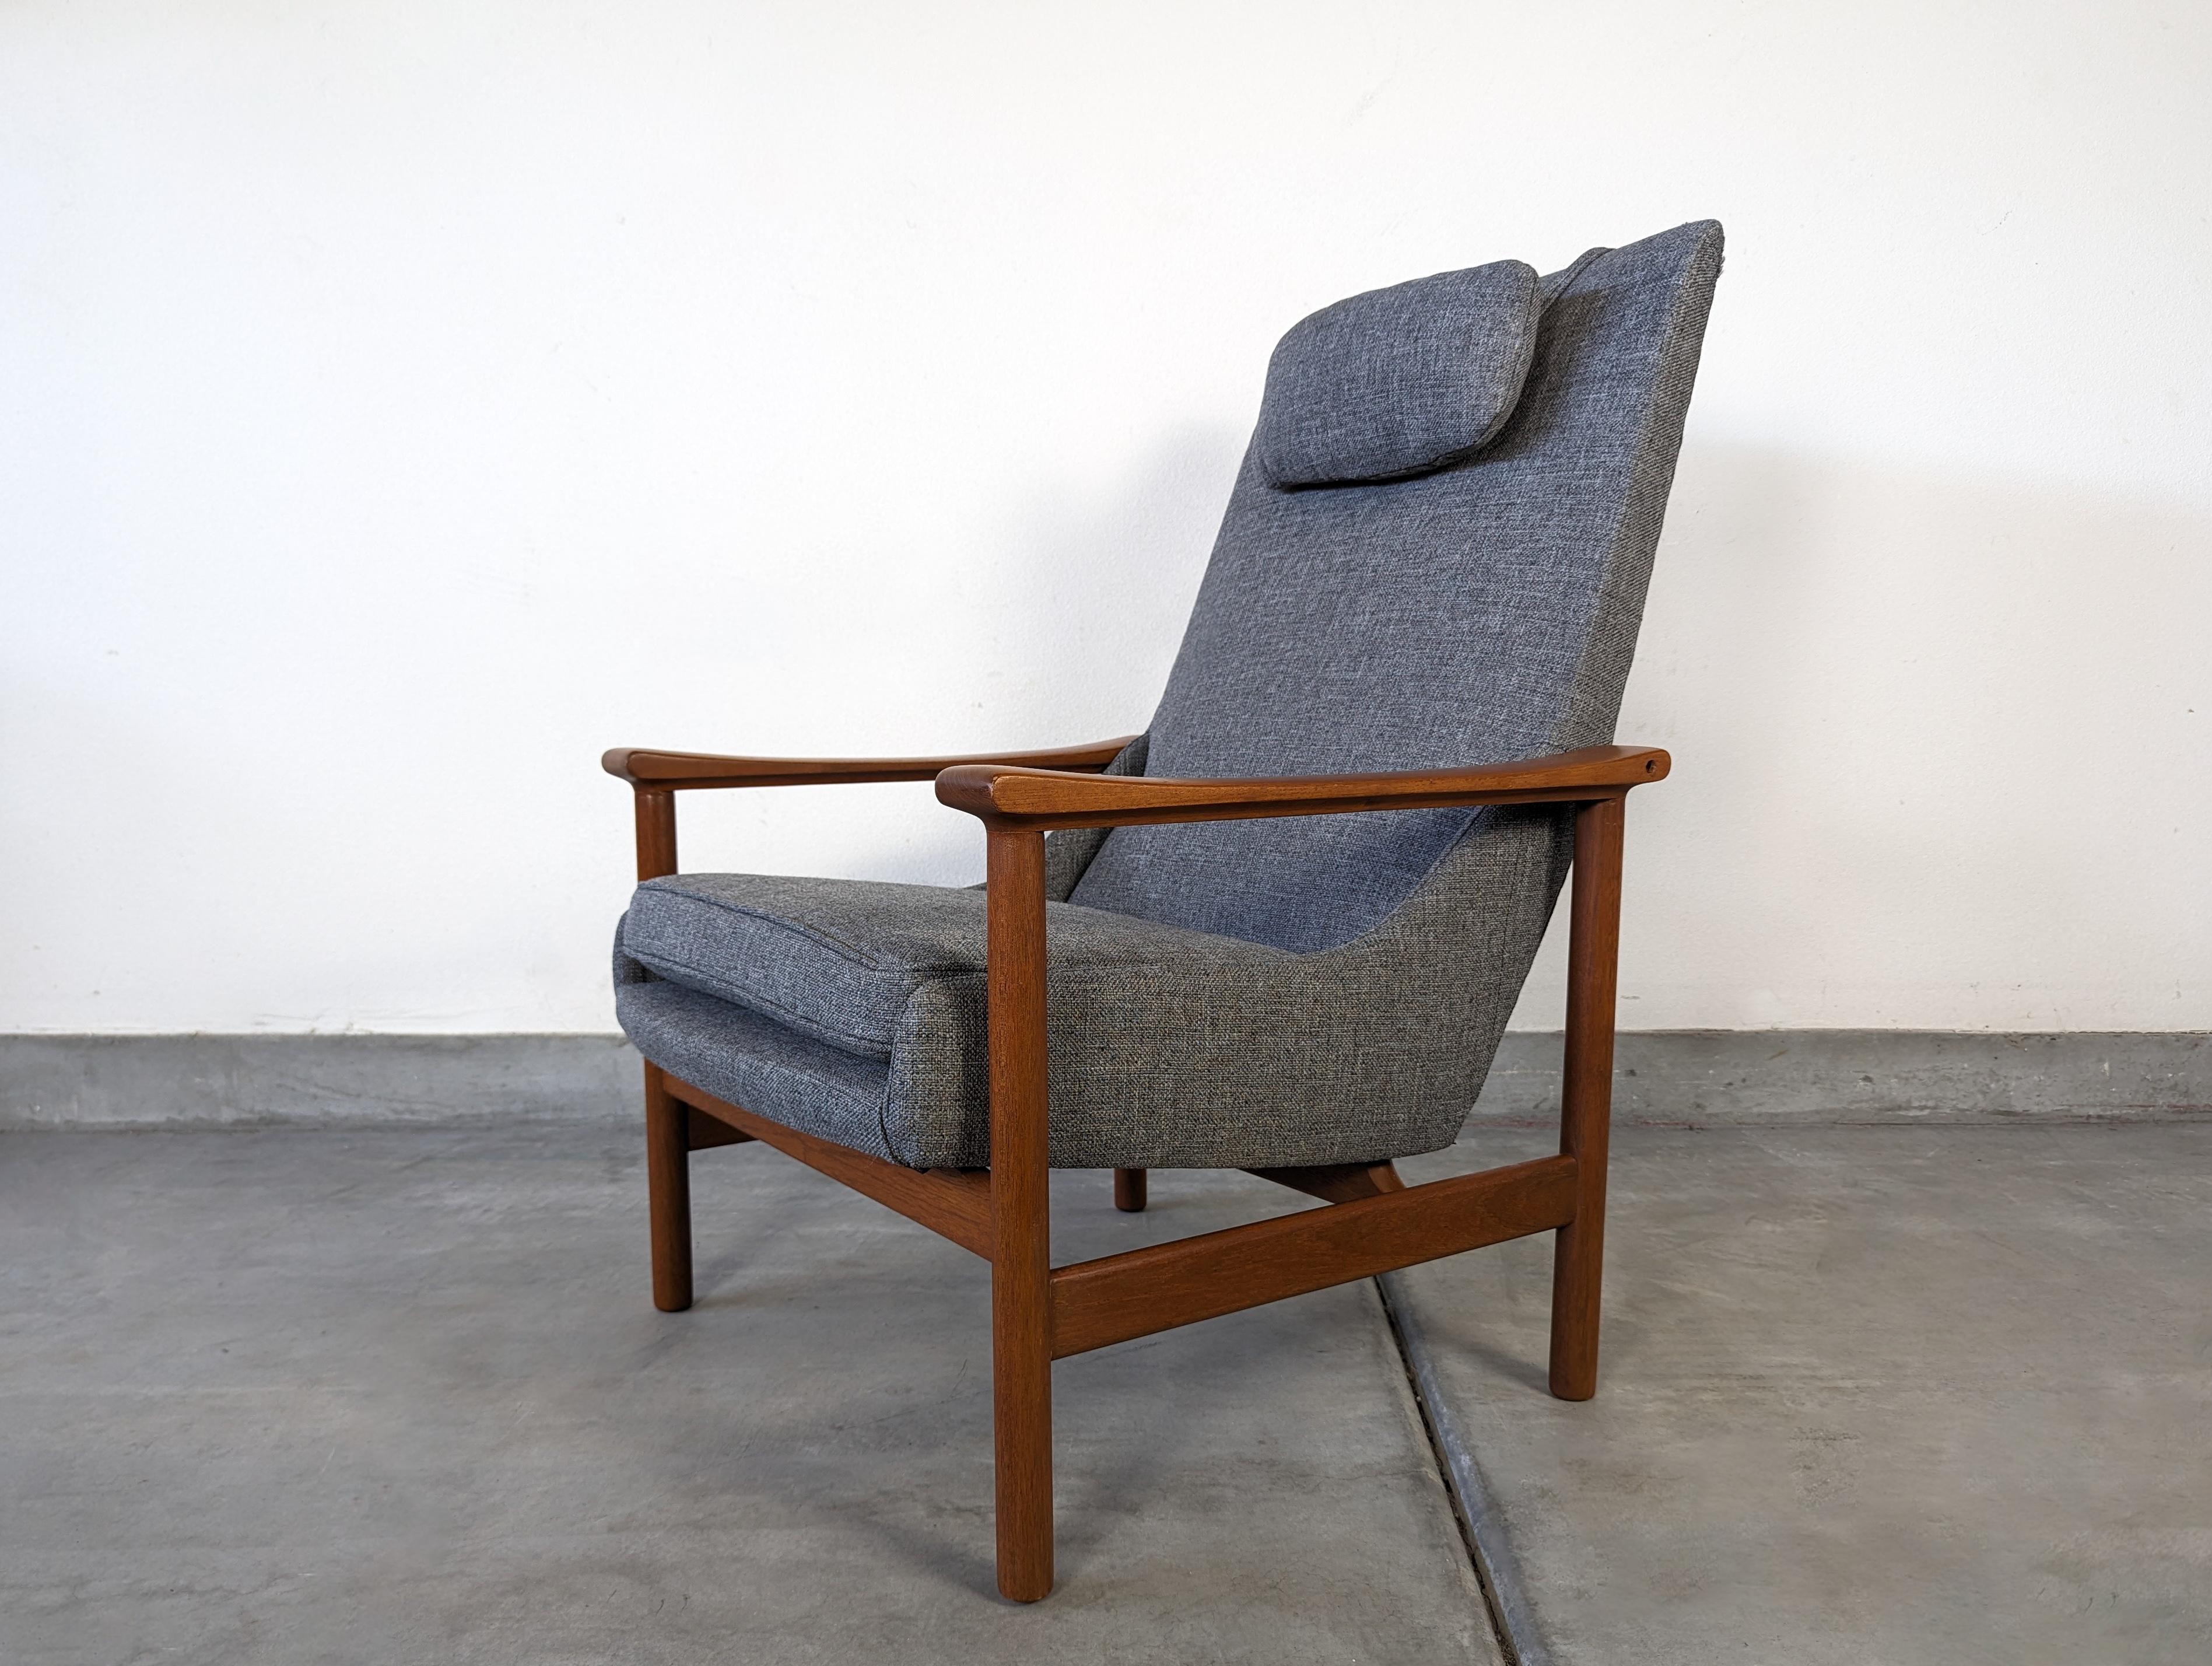 Présentant une pièce intemporelle du design scandinave, cette chaise longue Model-251 allie sans effort l'élégance, le confort et le savoir-faire. Avec sa superbe base en teck et son nouveau tissu gris, cette chaise est une véritable déclaration de